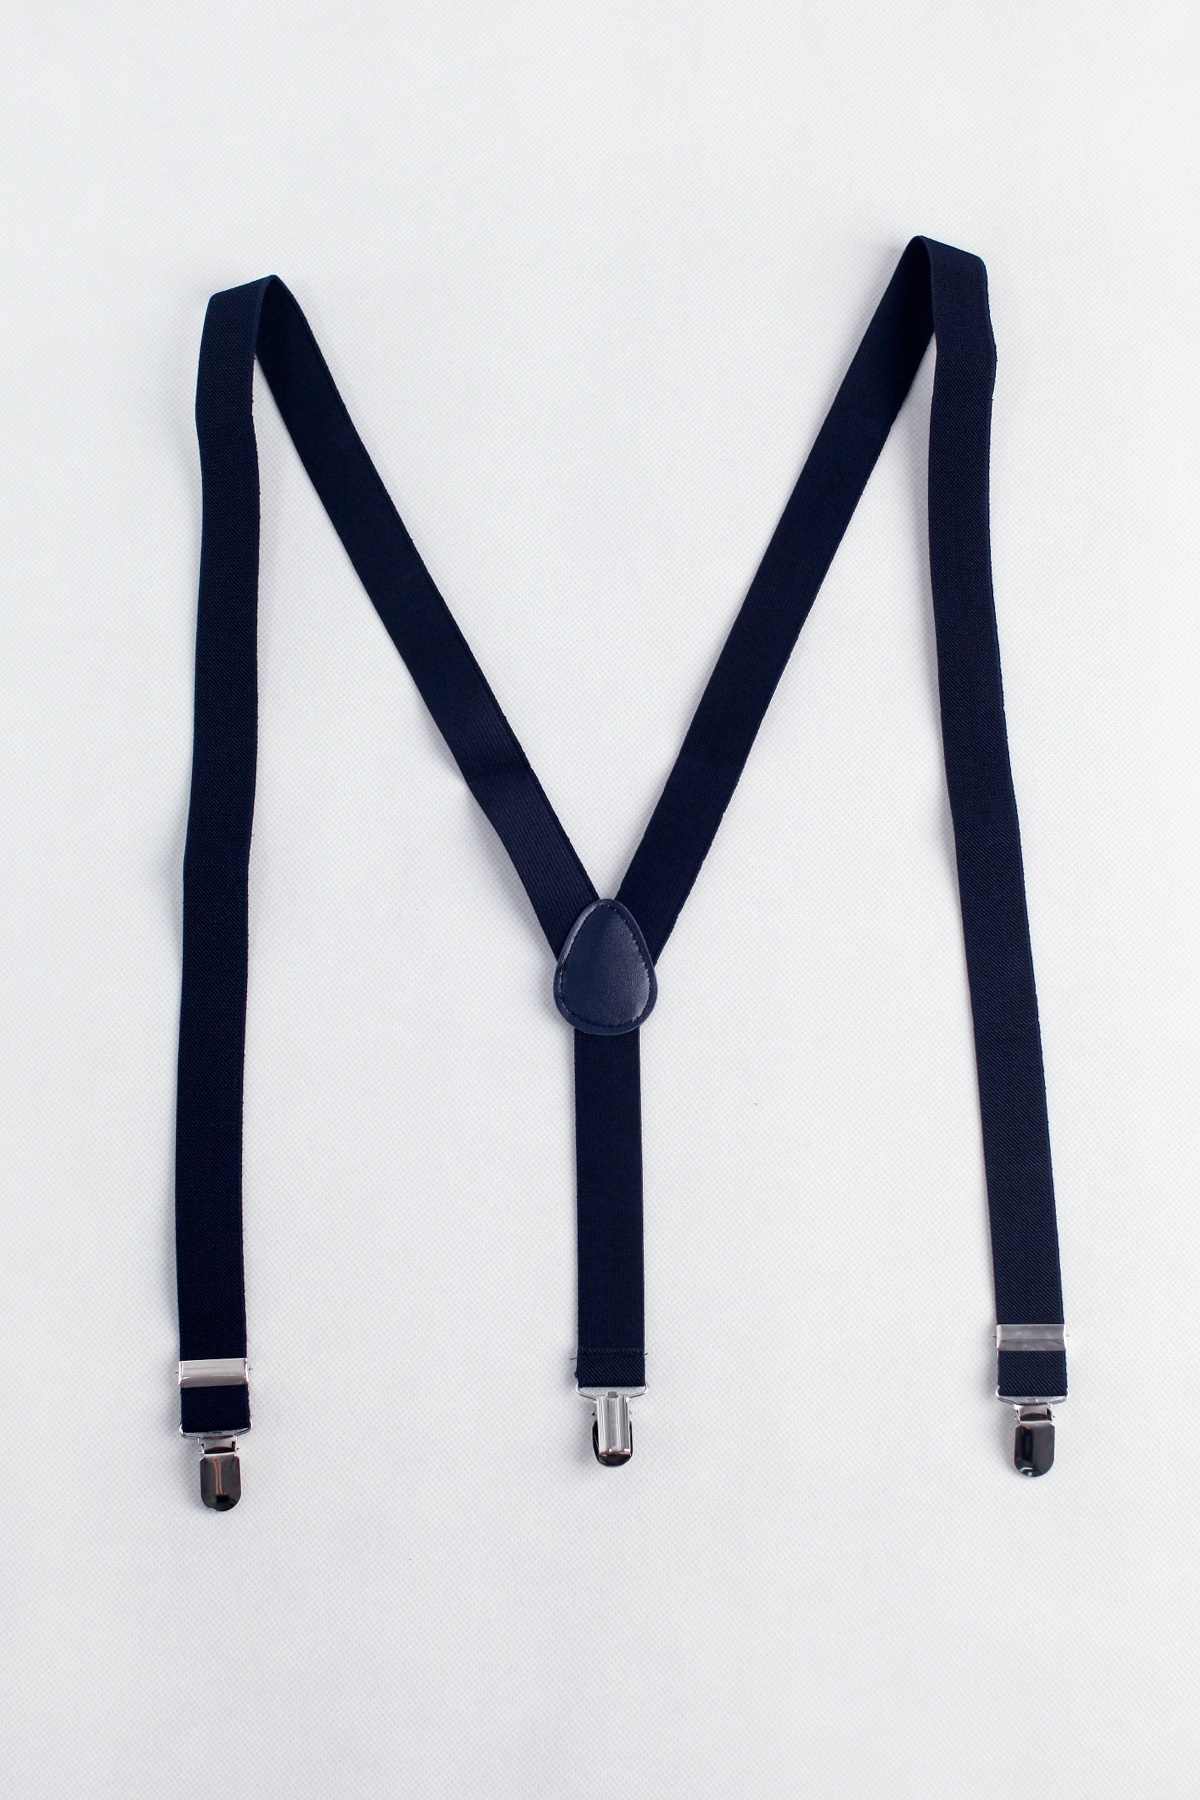 Men's Elastic Suspenders in Navy